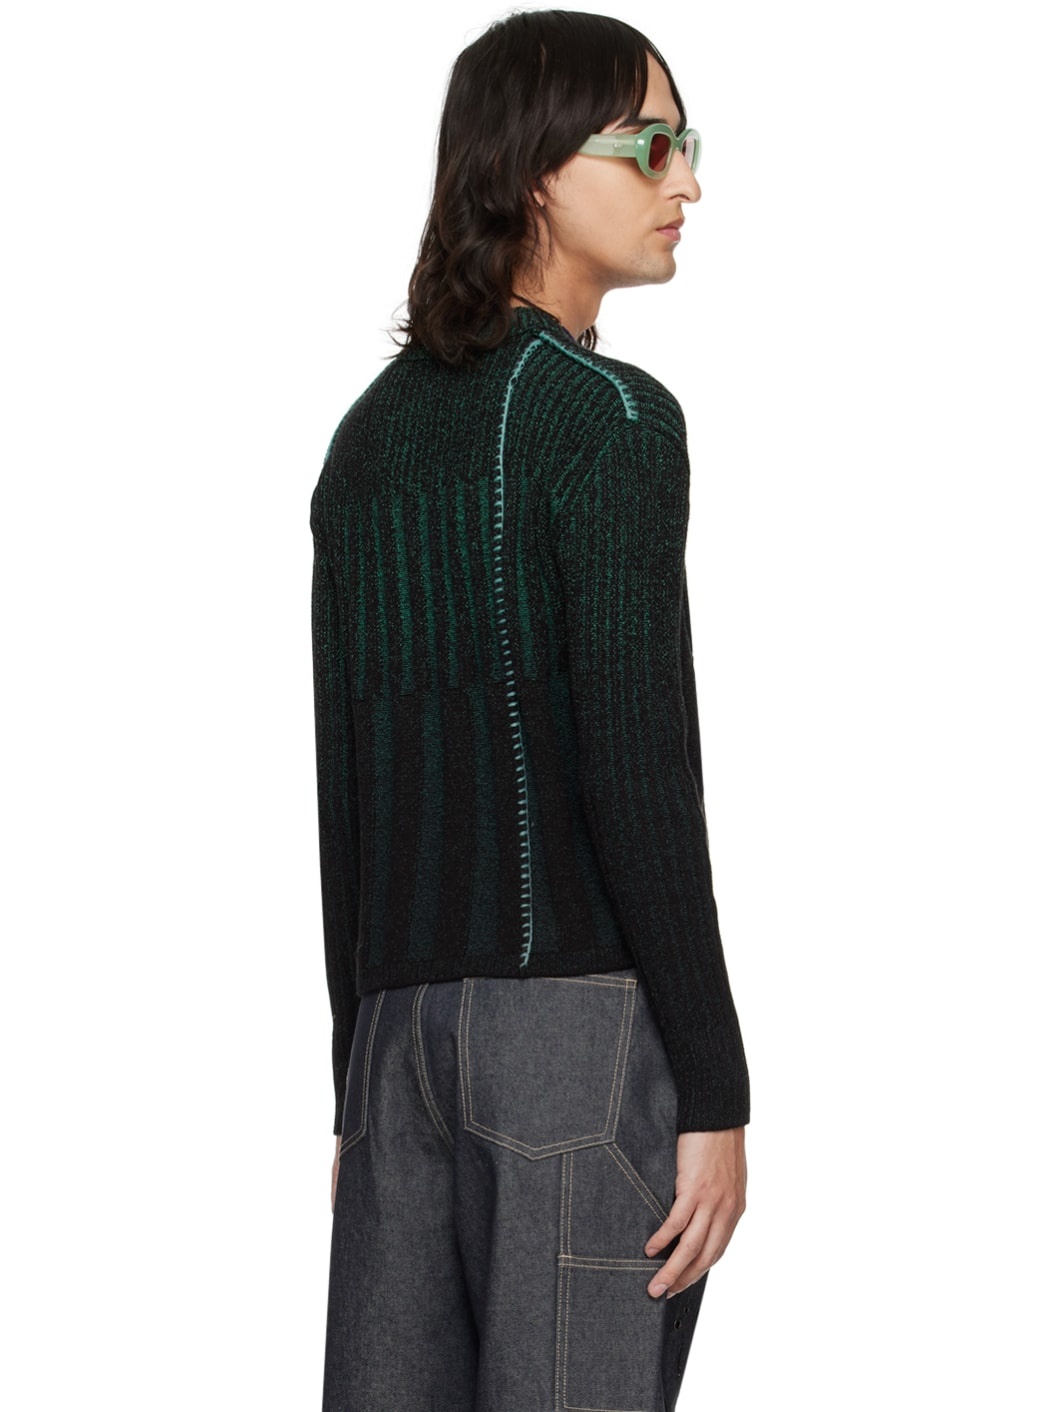 Black & Green Woosoo Sweater - 3